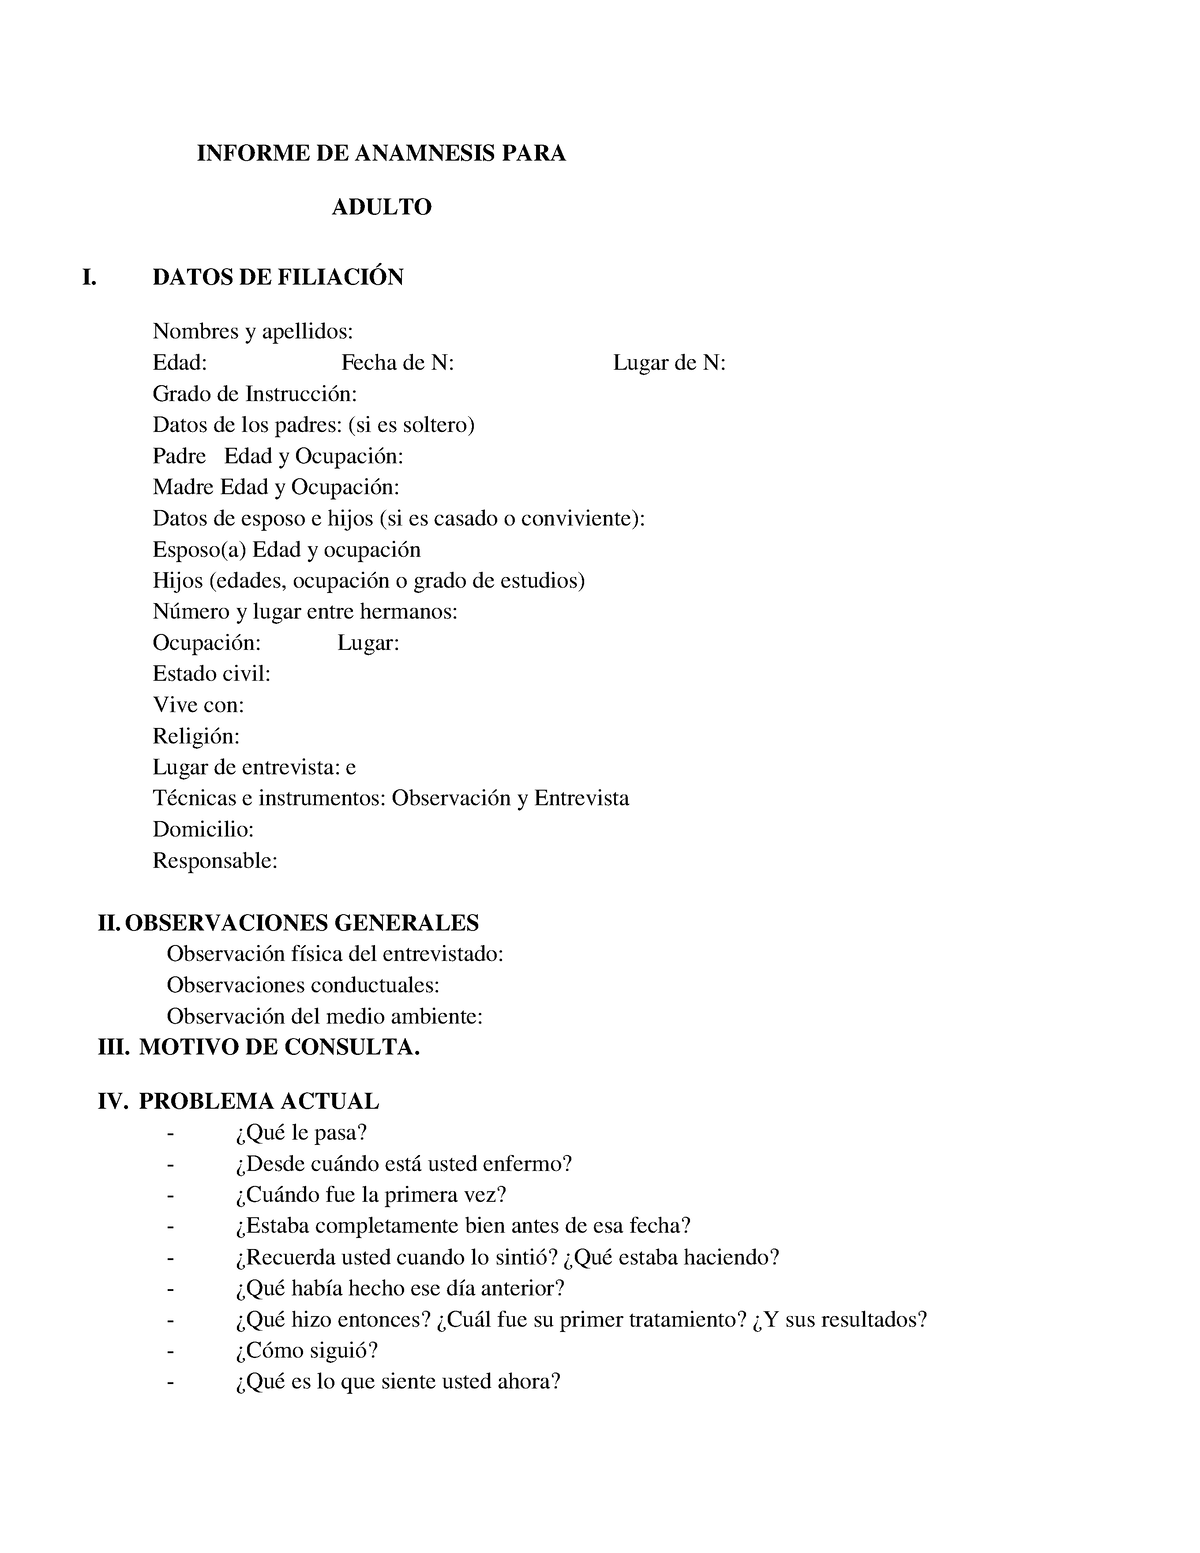 Anamnesis Clinica De Adultos Informe De Anamnesis Para Adulto I Datos De FiliaciÓn Nombres Y 8900